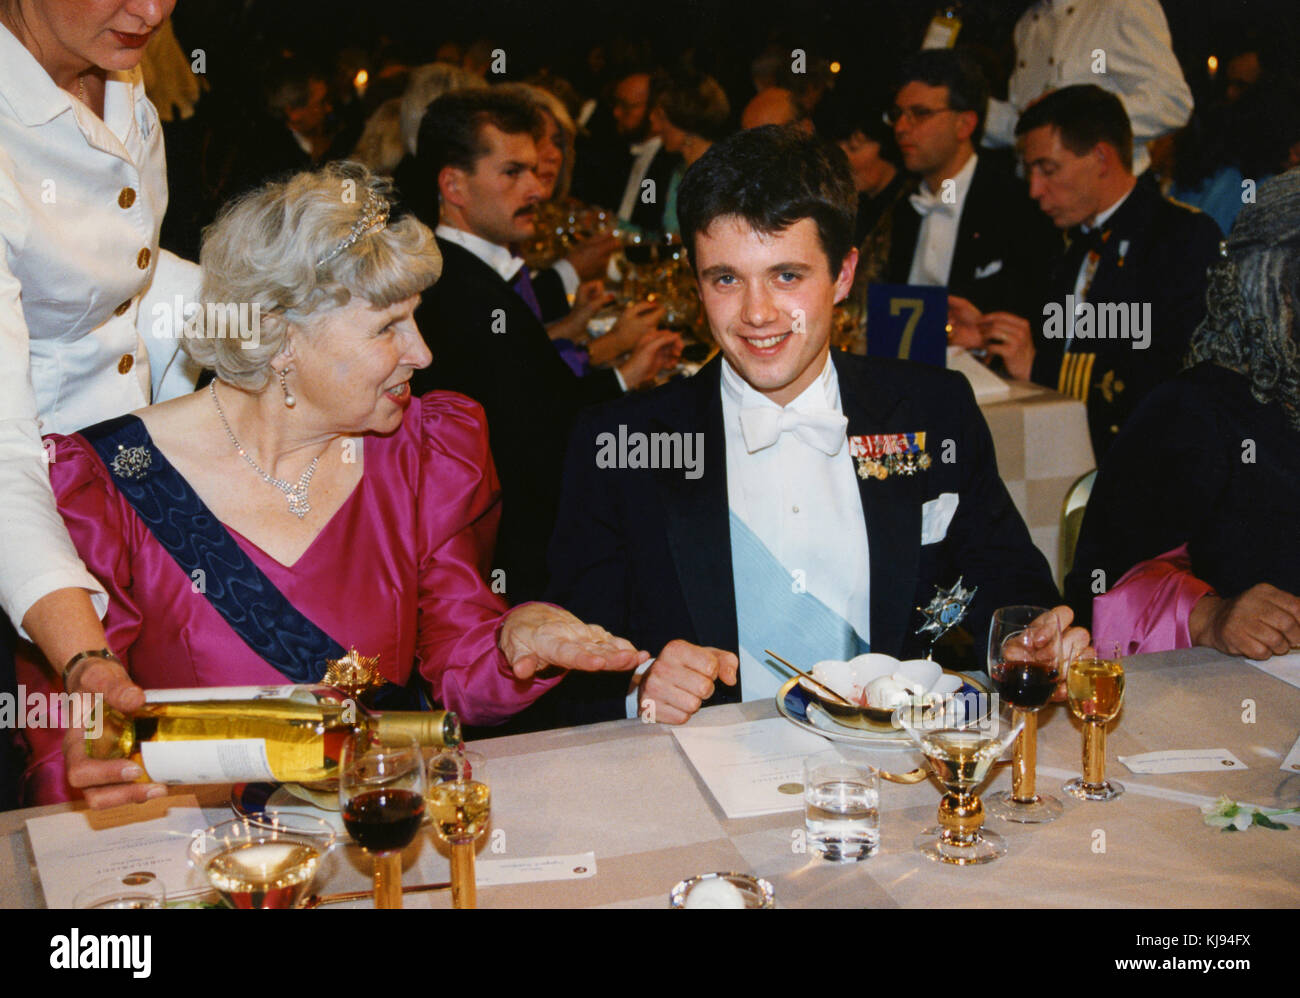 Kronprinz Frederik von Dänemark im Nobel und Veranstaltungsräume mit Partner am Tisch ingegerd troedsson schwedische Sprecher 1993 Stockfoto